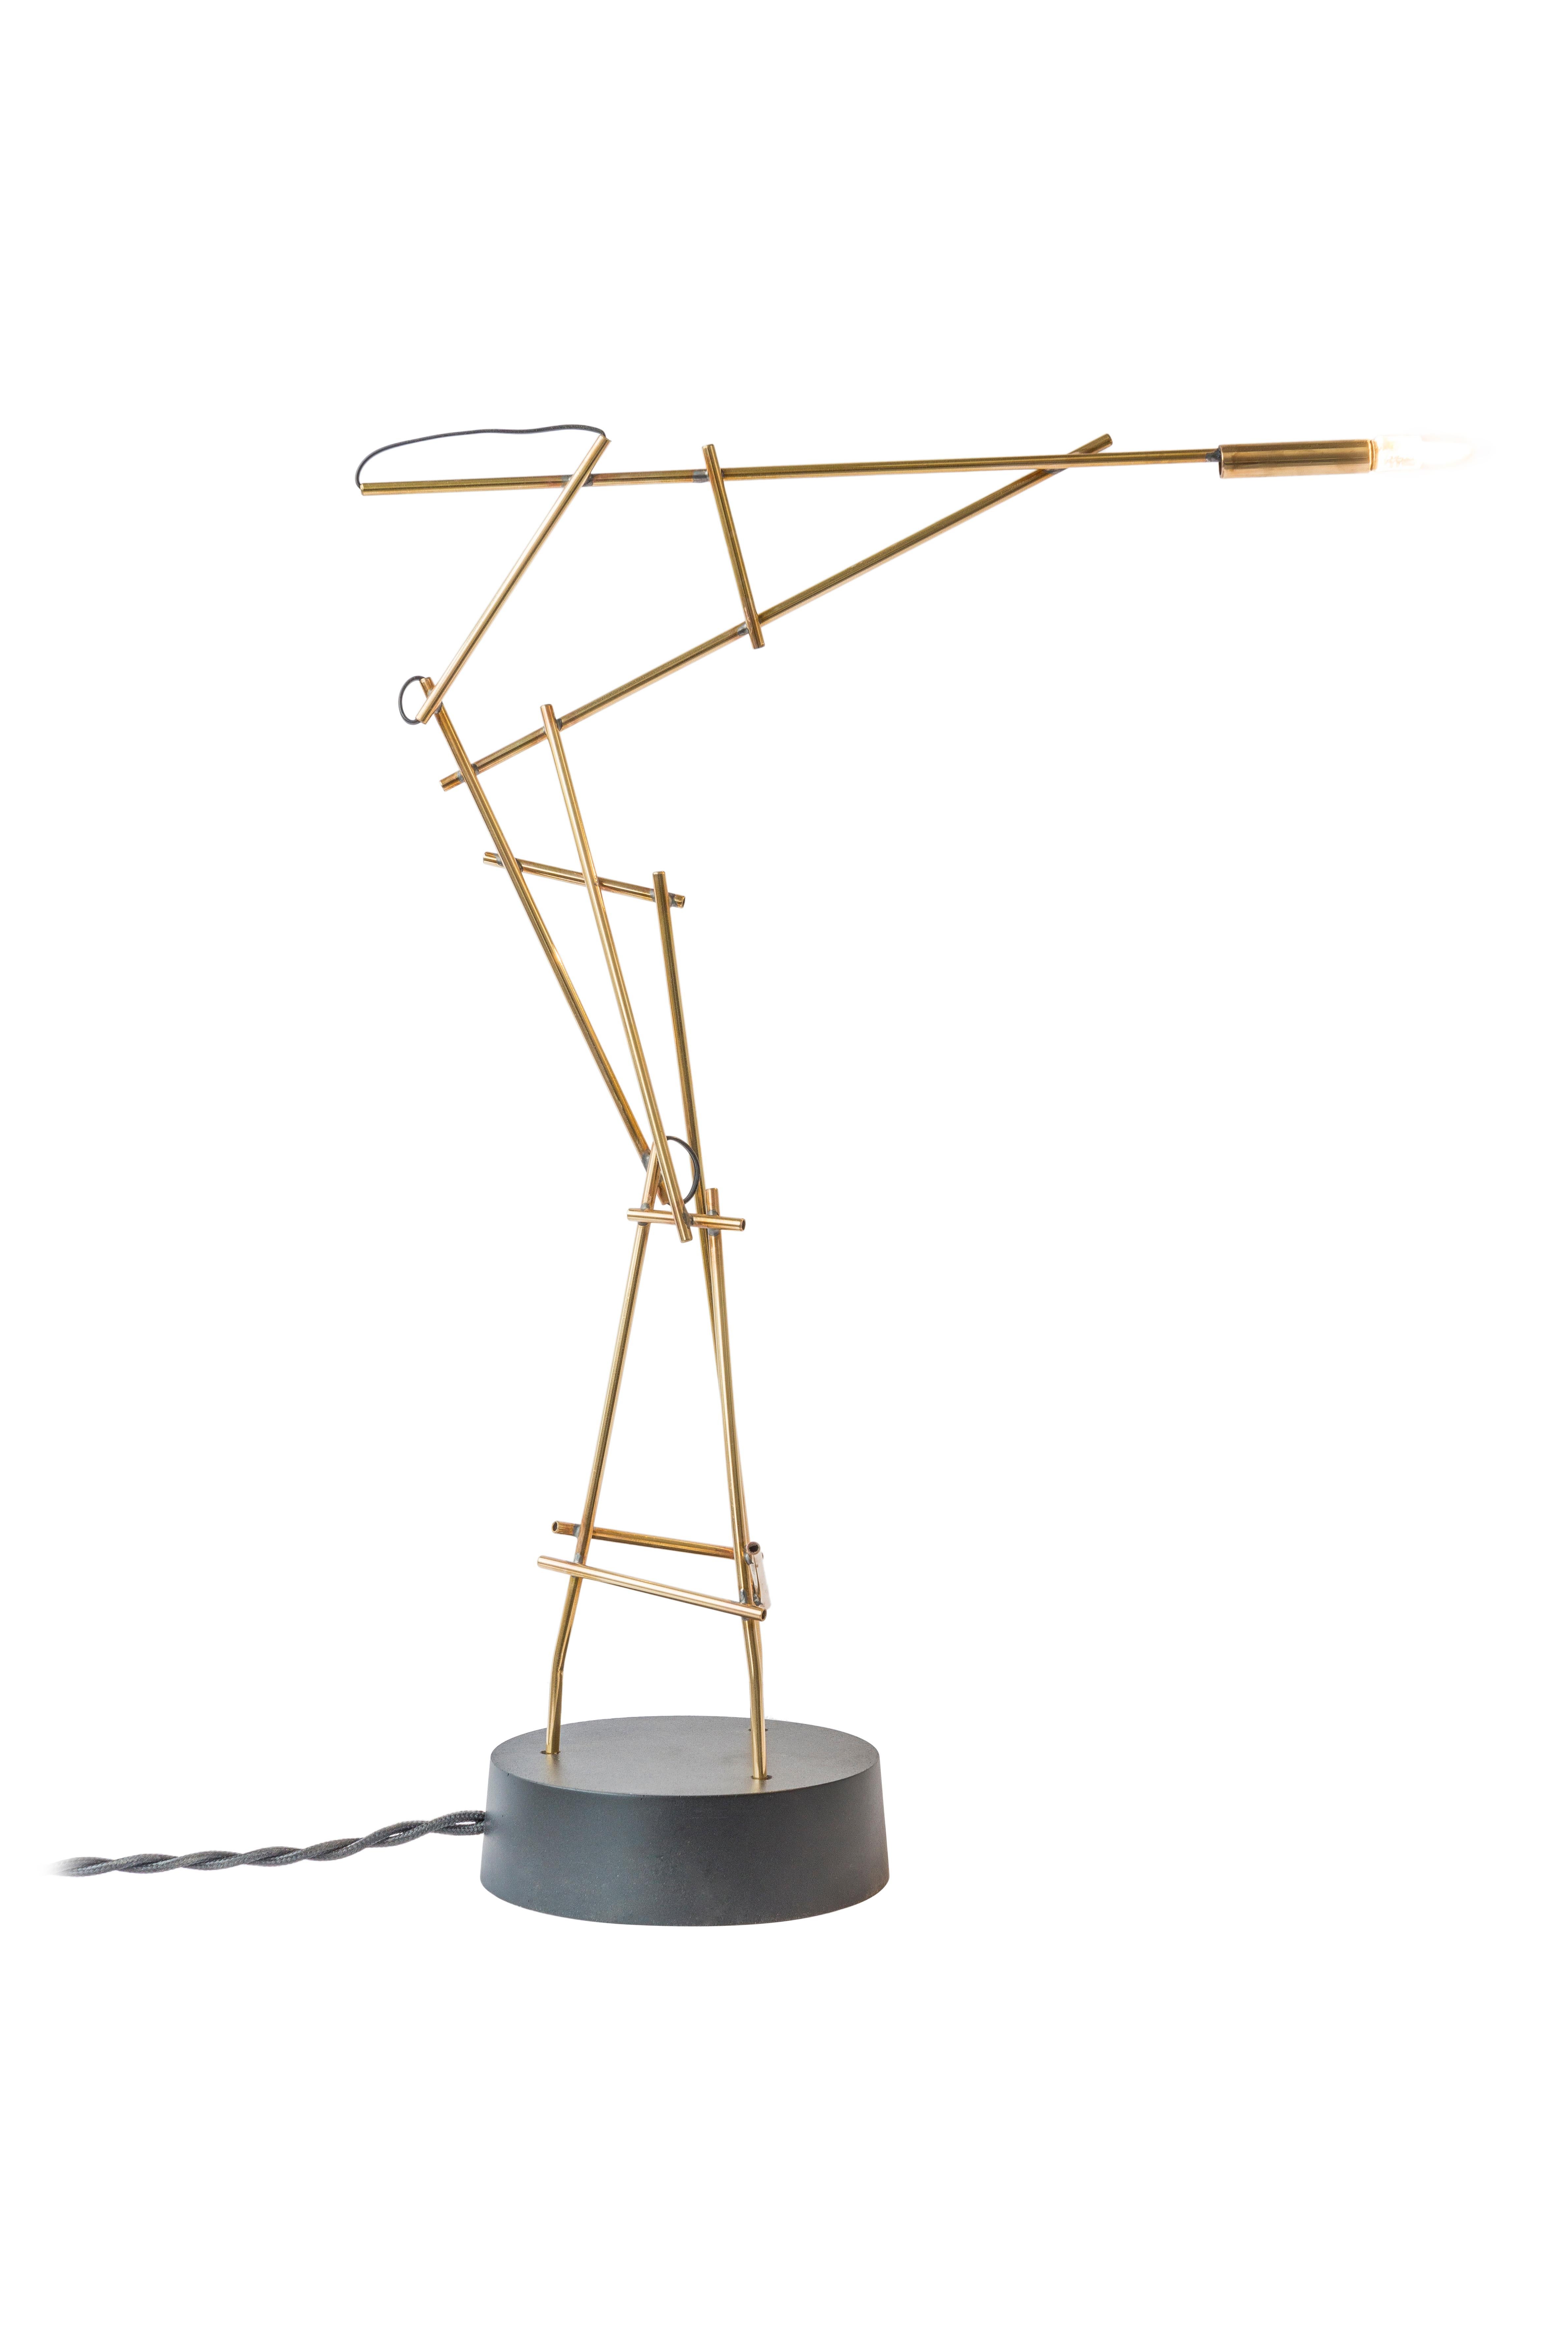 Les lampes Tinkering sont une collection de lampes de table minimales et stylisées dans lesquelles Joost a expérimenté des façons inhabituelles de capturer, refléter et montrer la lumière. Dans l'atelier de Joost, le bruit des outils, des tournevis